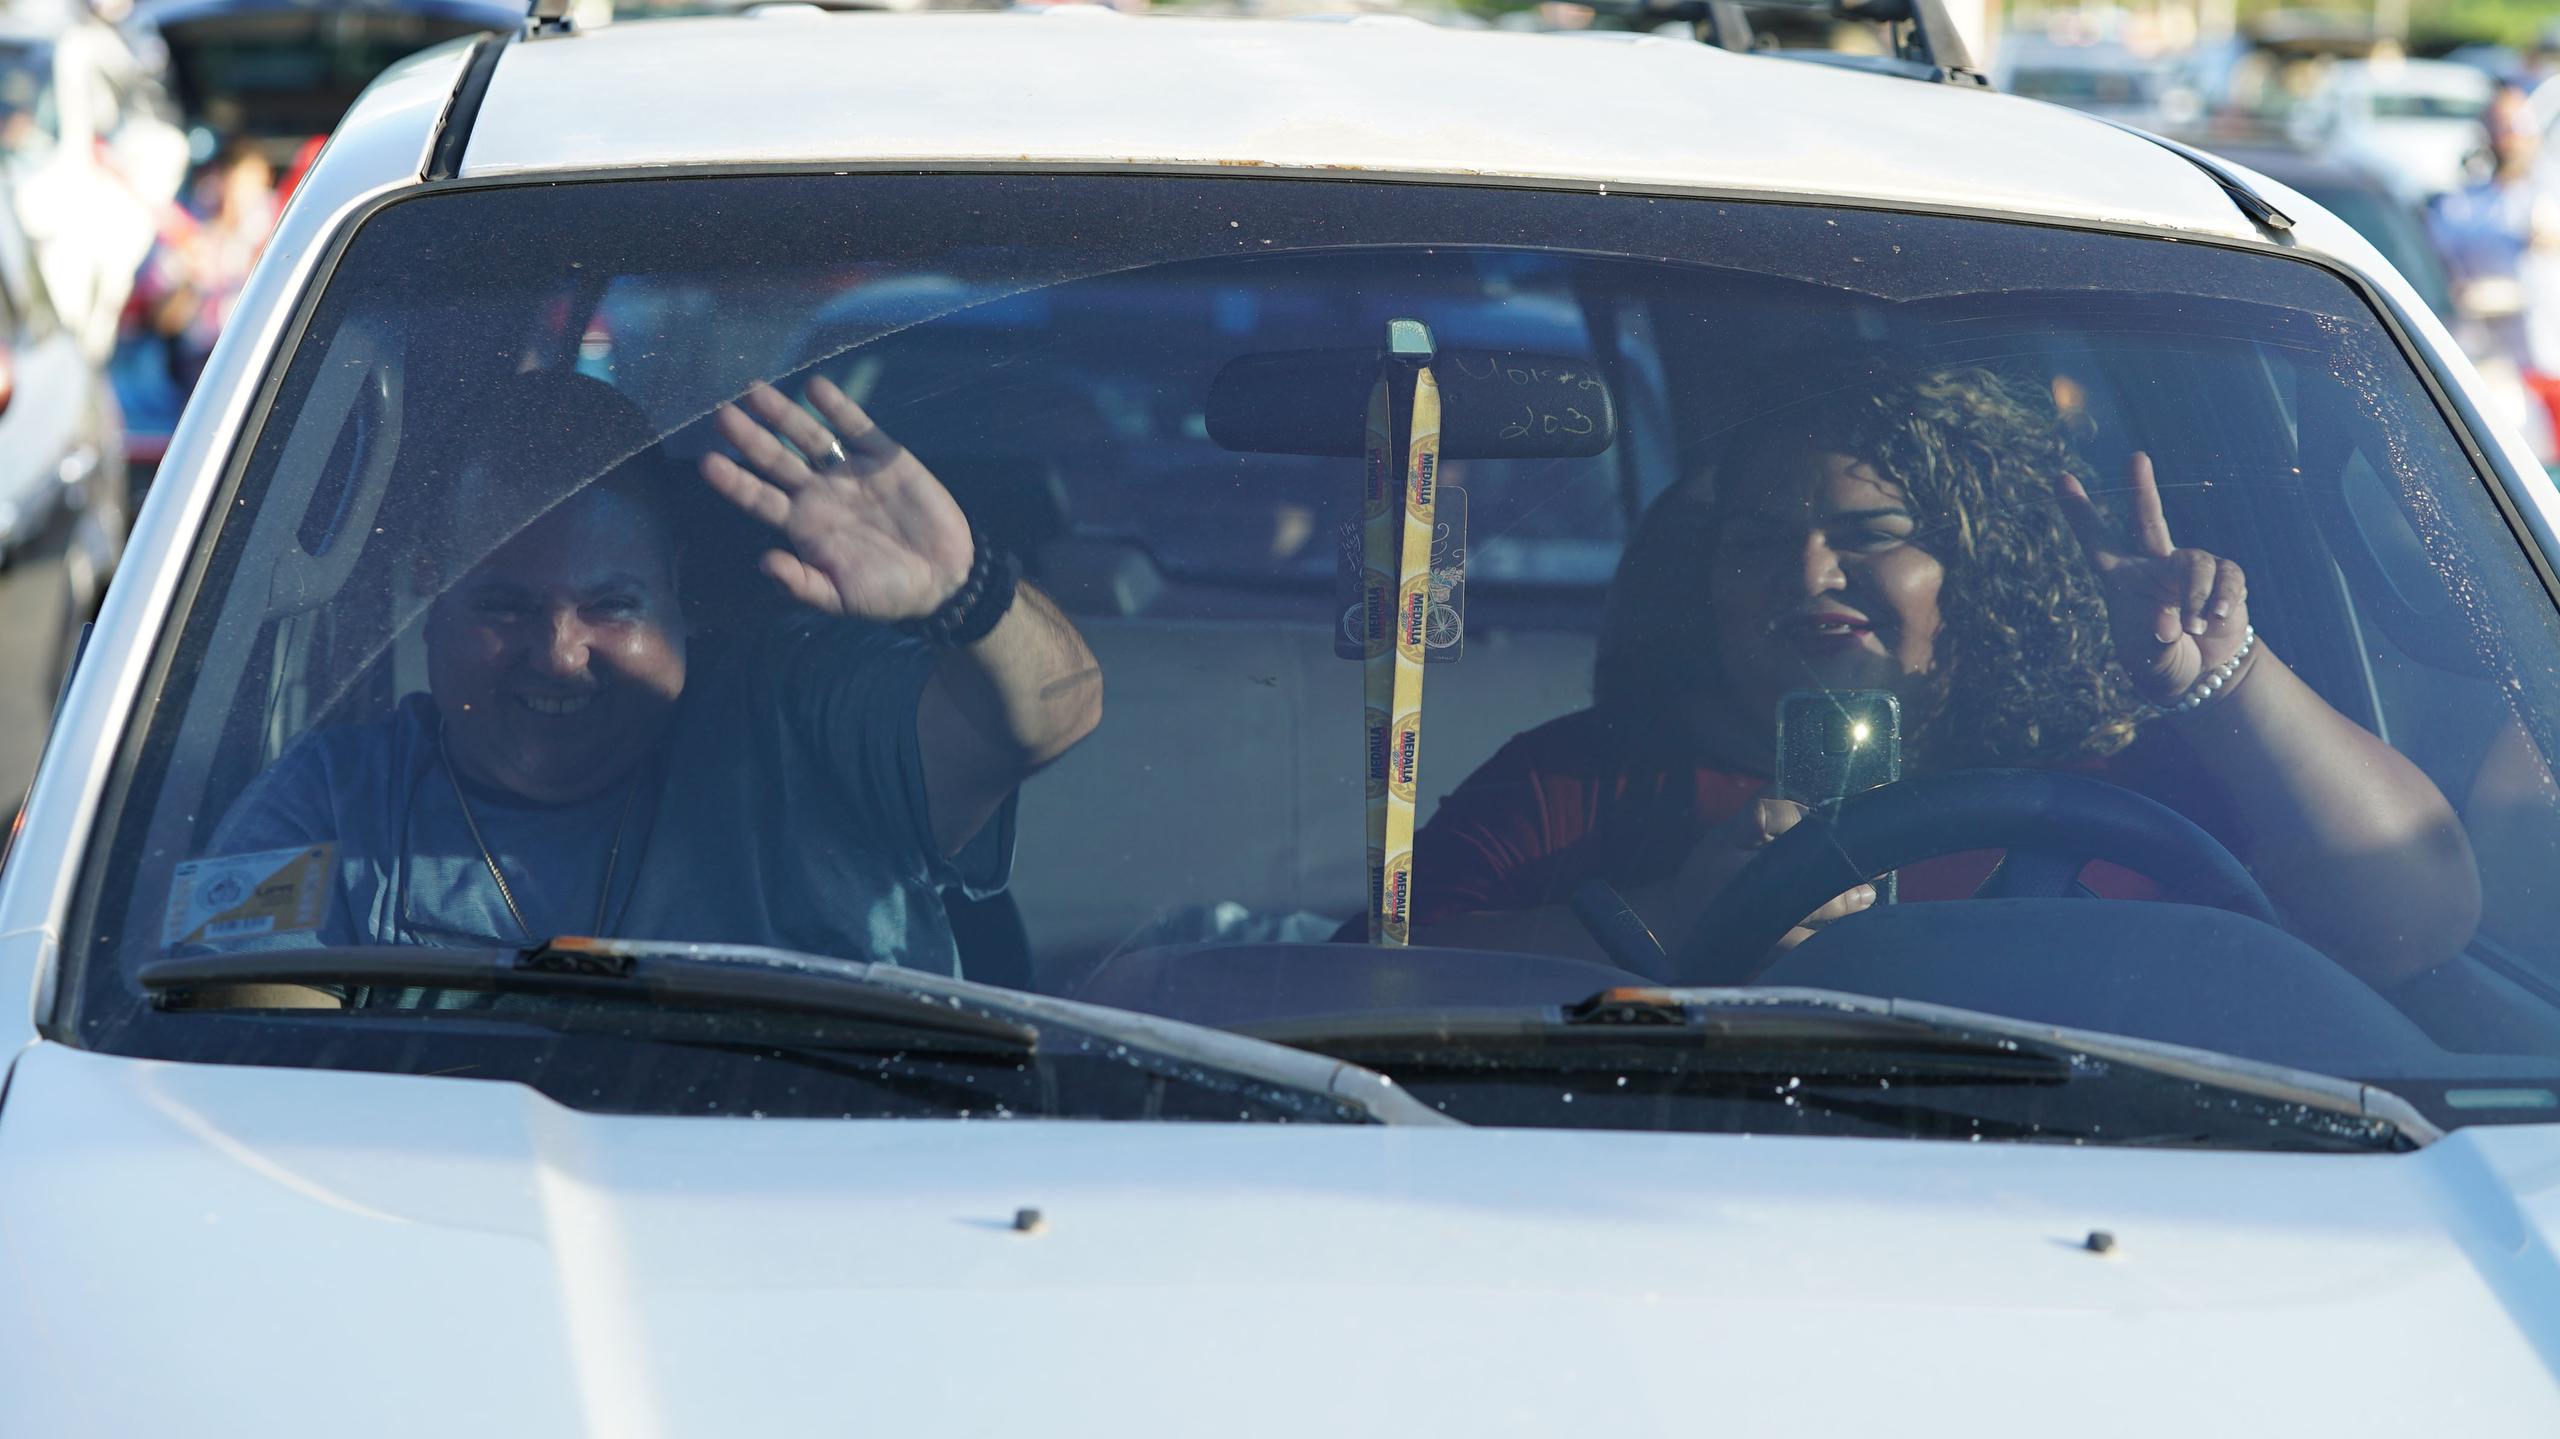 Gabriel Quiles y Sherly Hernández prefirieron disfrutar del concierto desde el interior del vehículo, sintonizando la emisora que les conectaba al sonido desde la tarima.